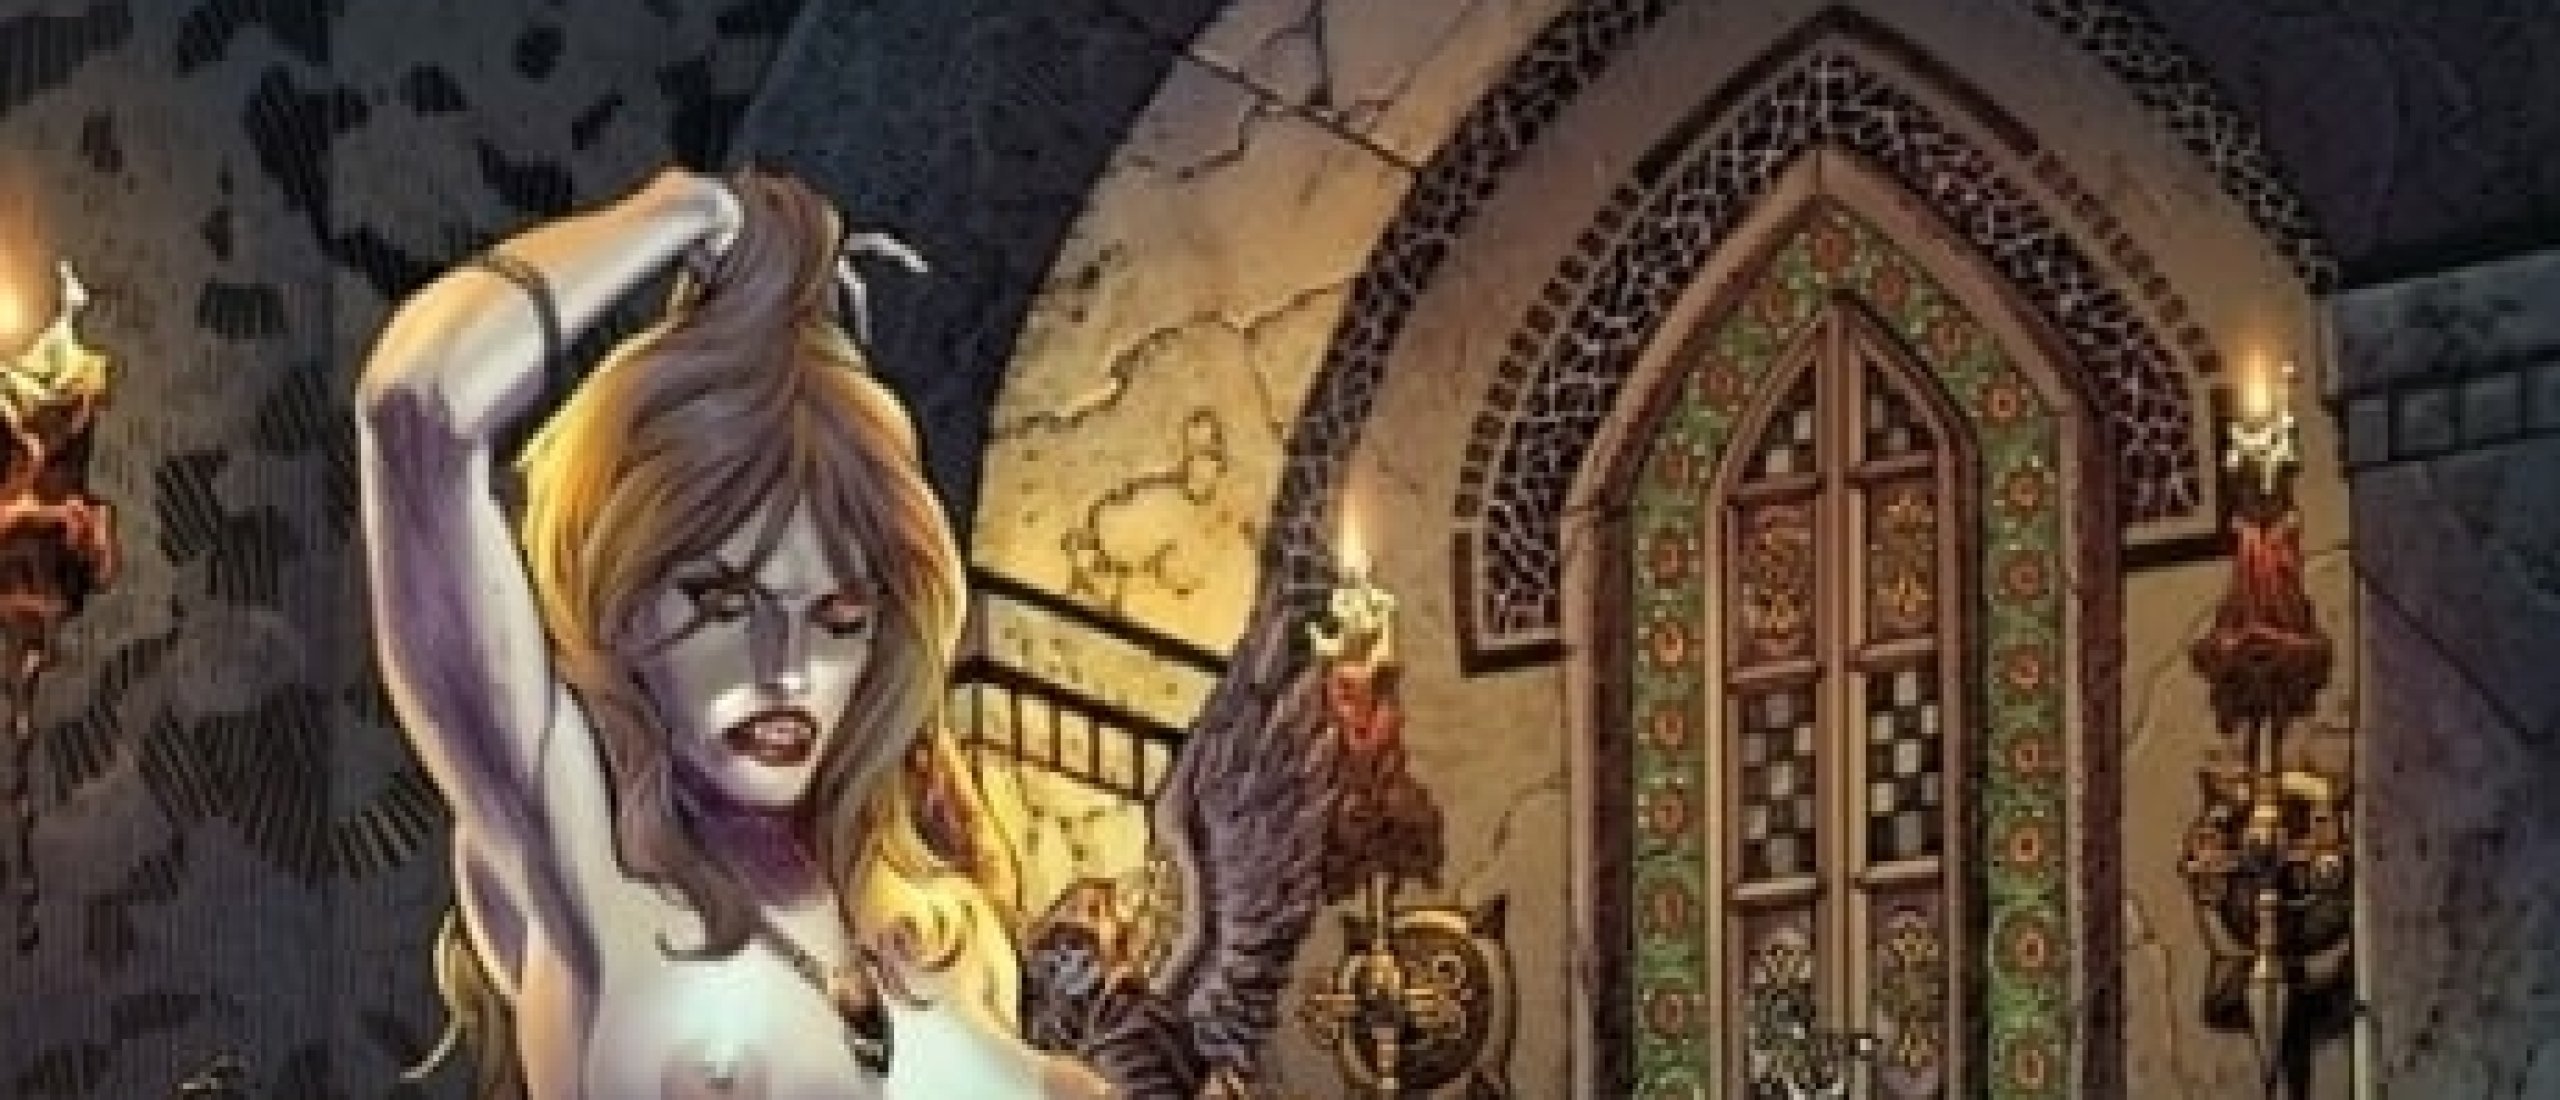 Erotic Gothic Horror of the American Illustrator Tim Vigil